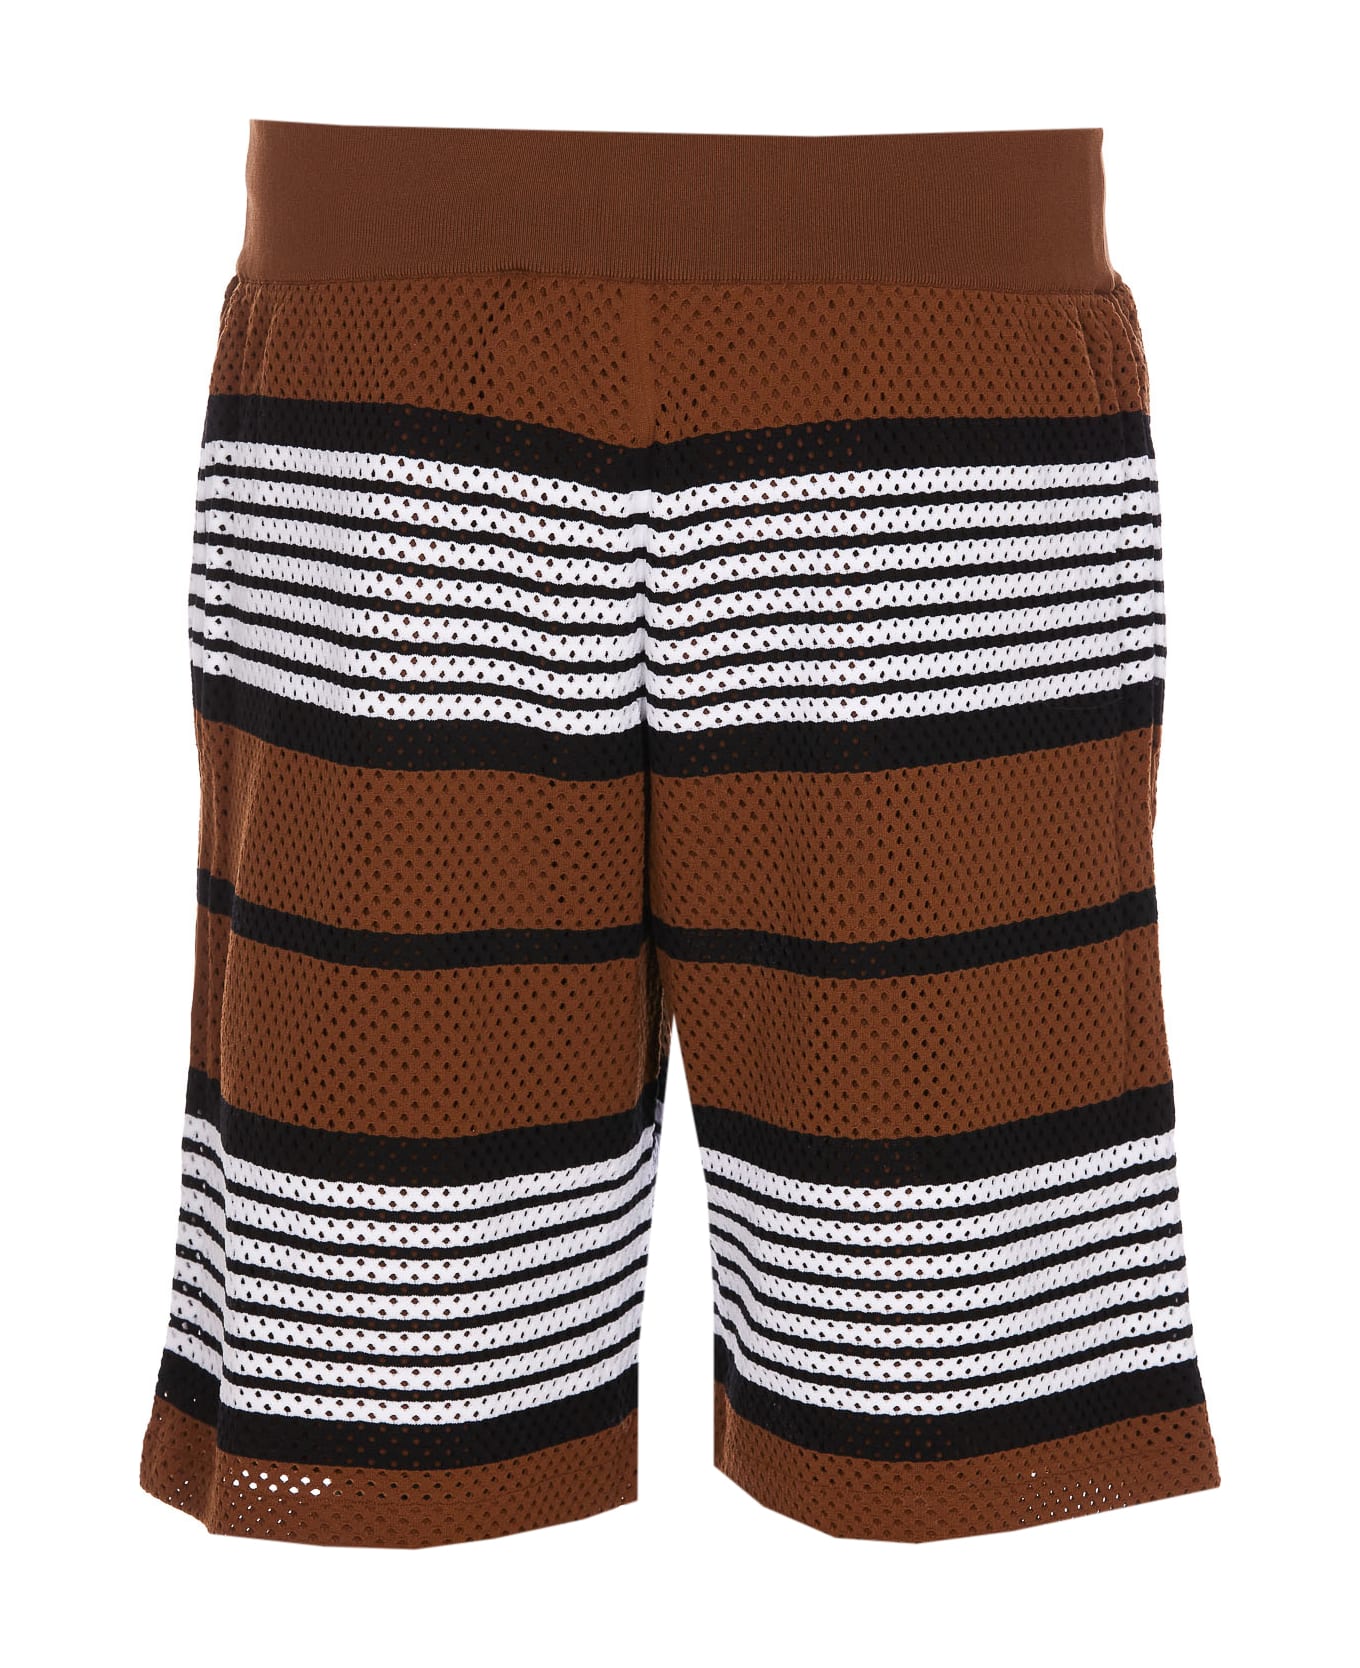 Burberry Stripe Print Shorts - Dark birch brown ショートパンツ